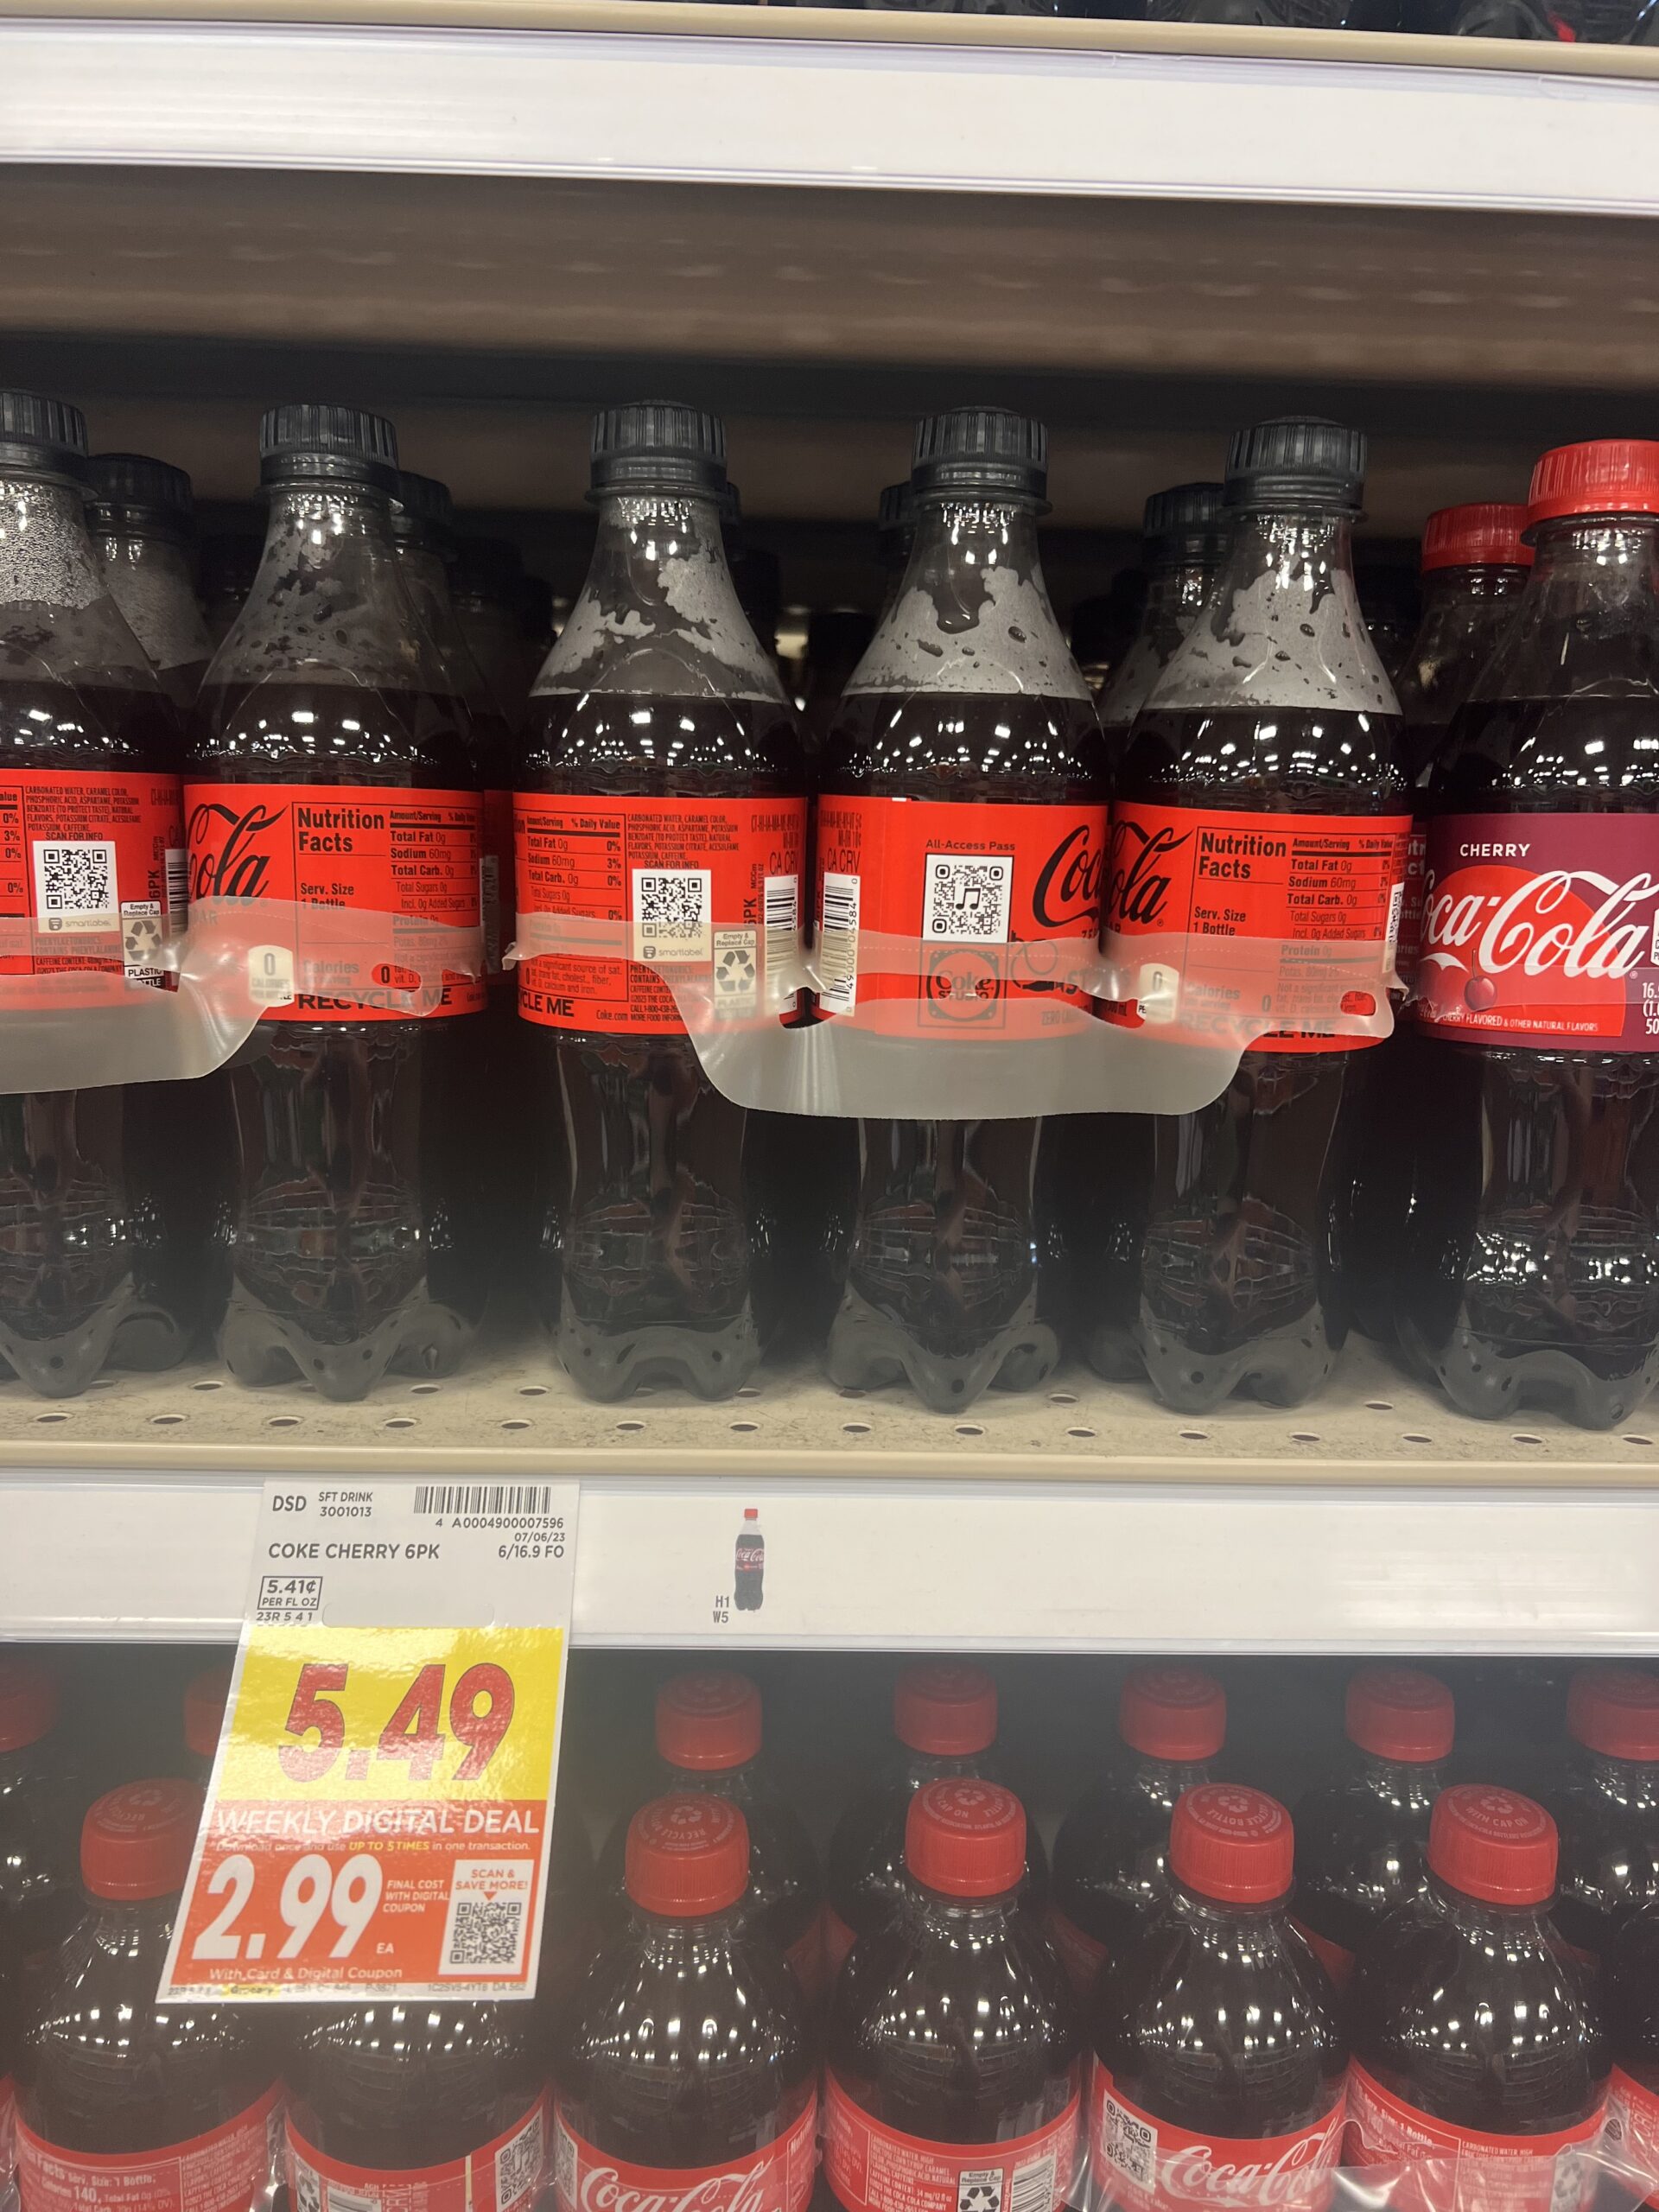 coke kroger shelf image 2